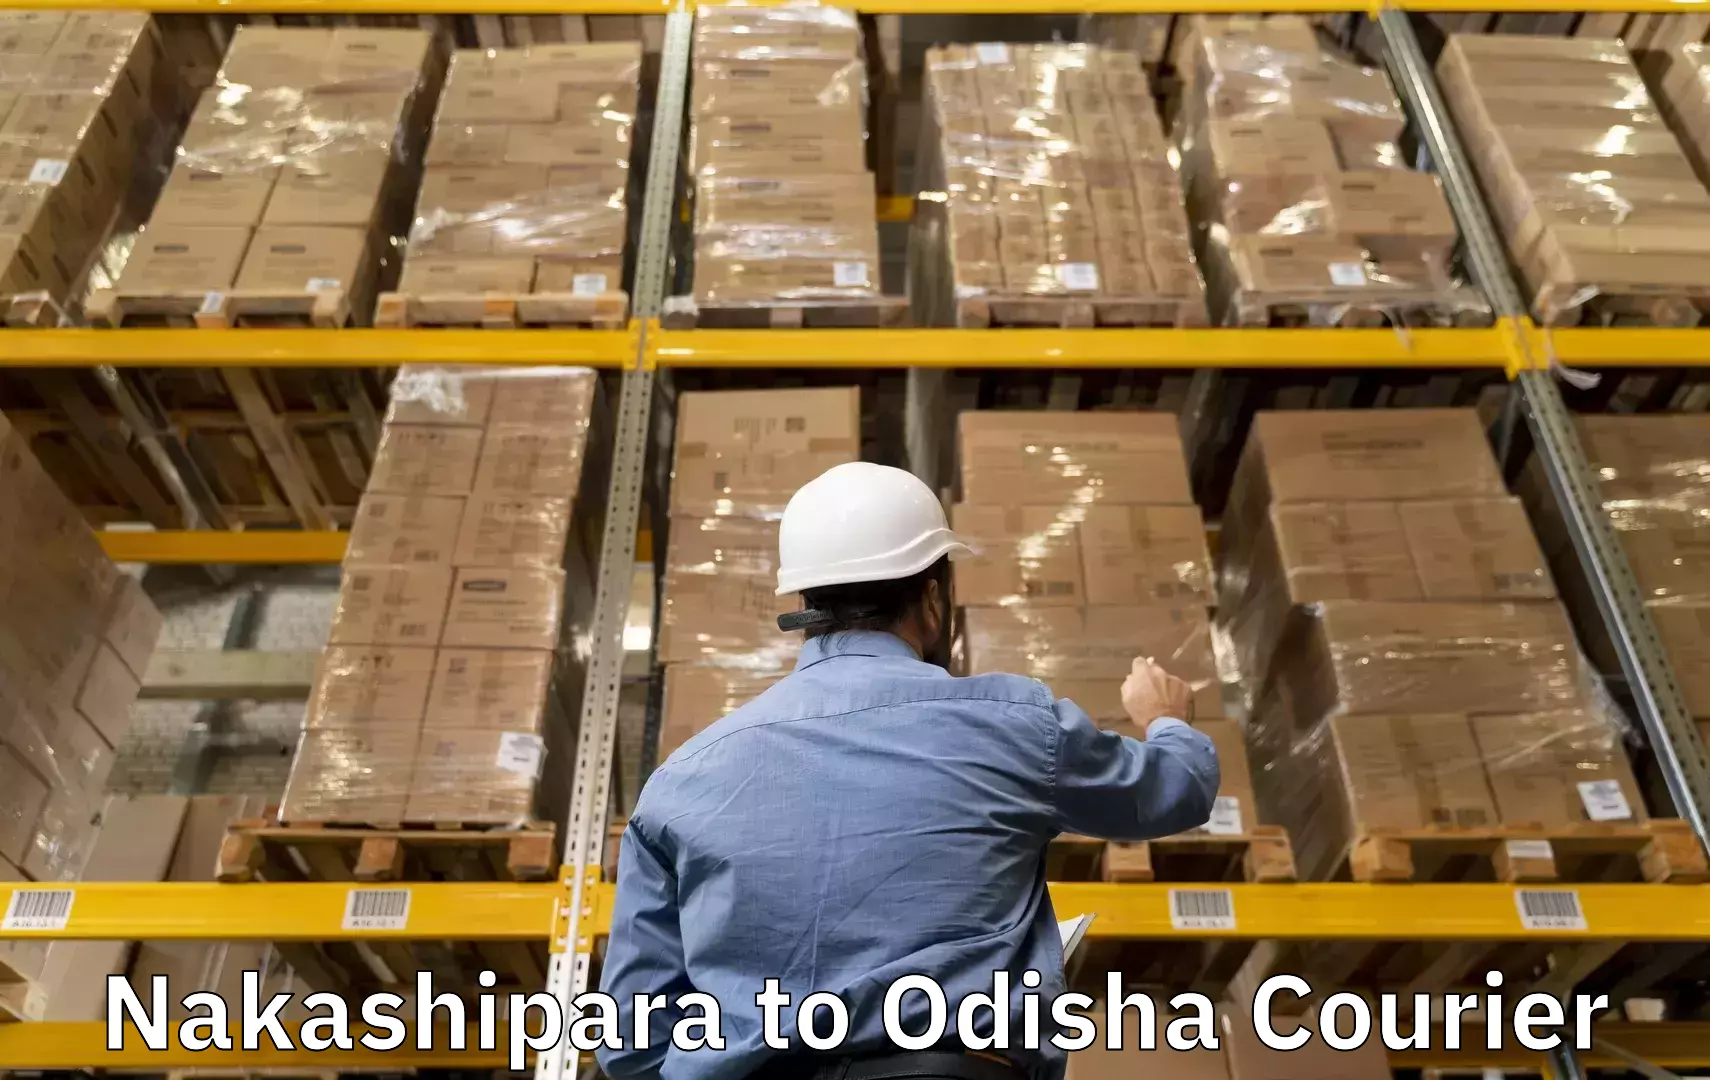 Baggage delivery optimization in Nakashipara to Raikia